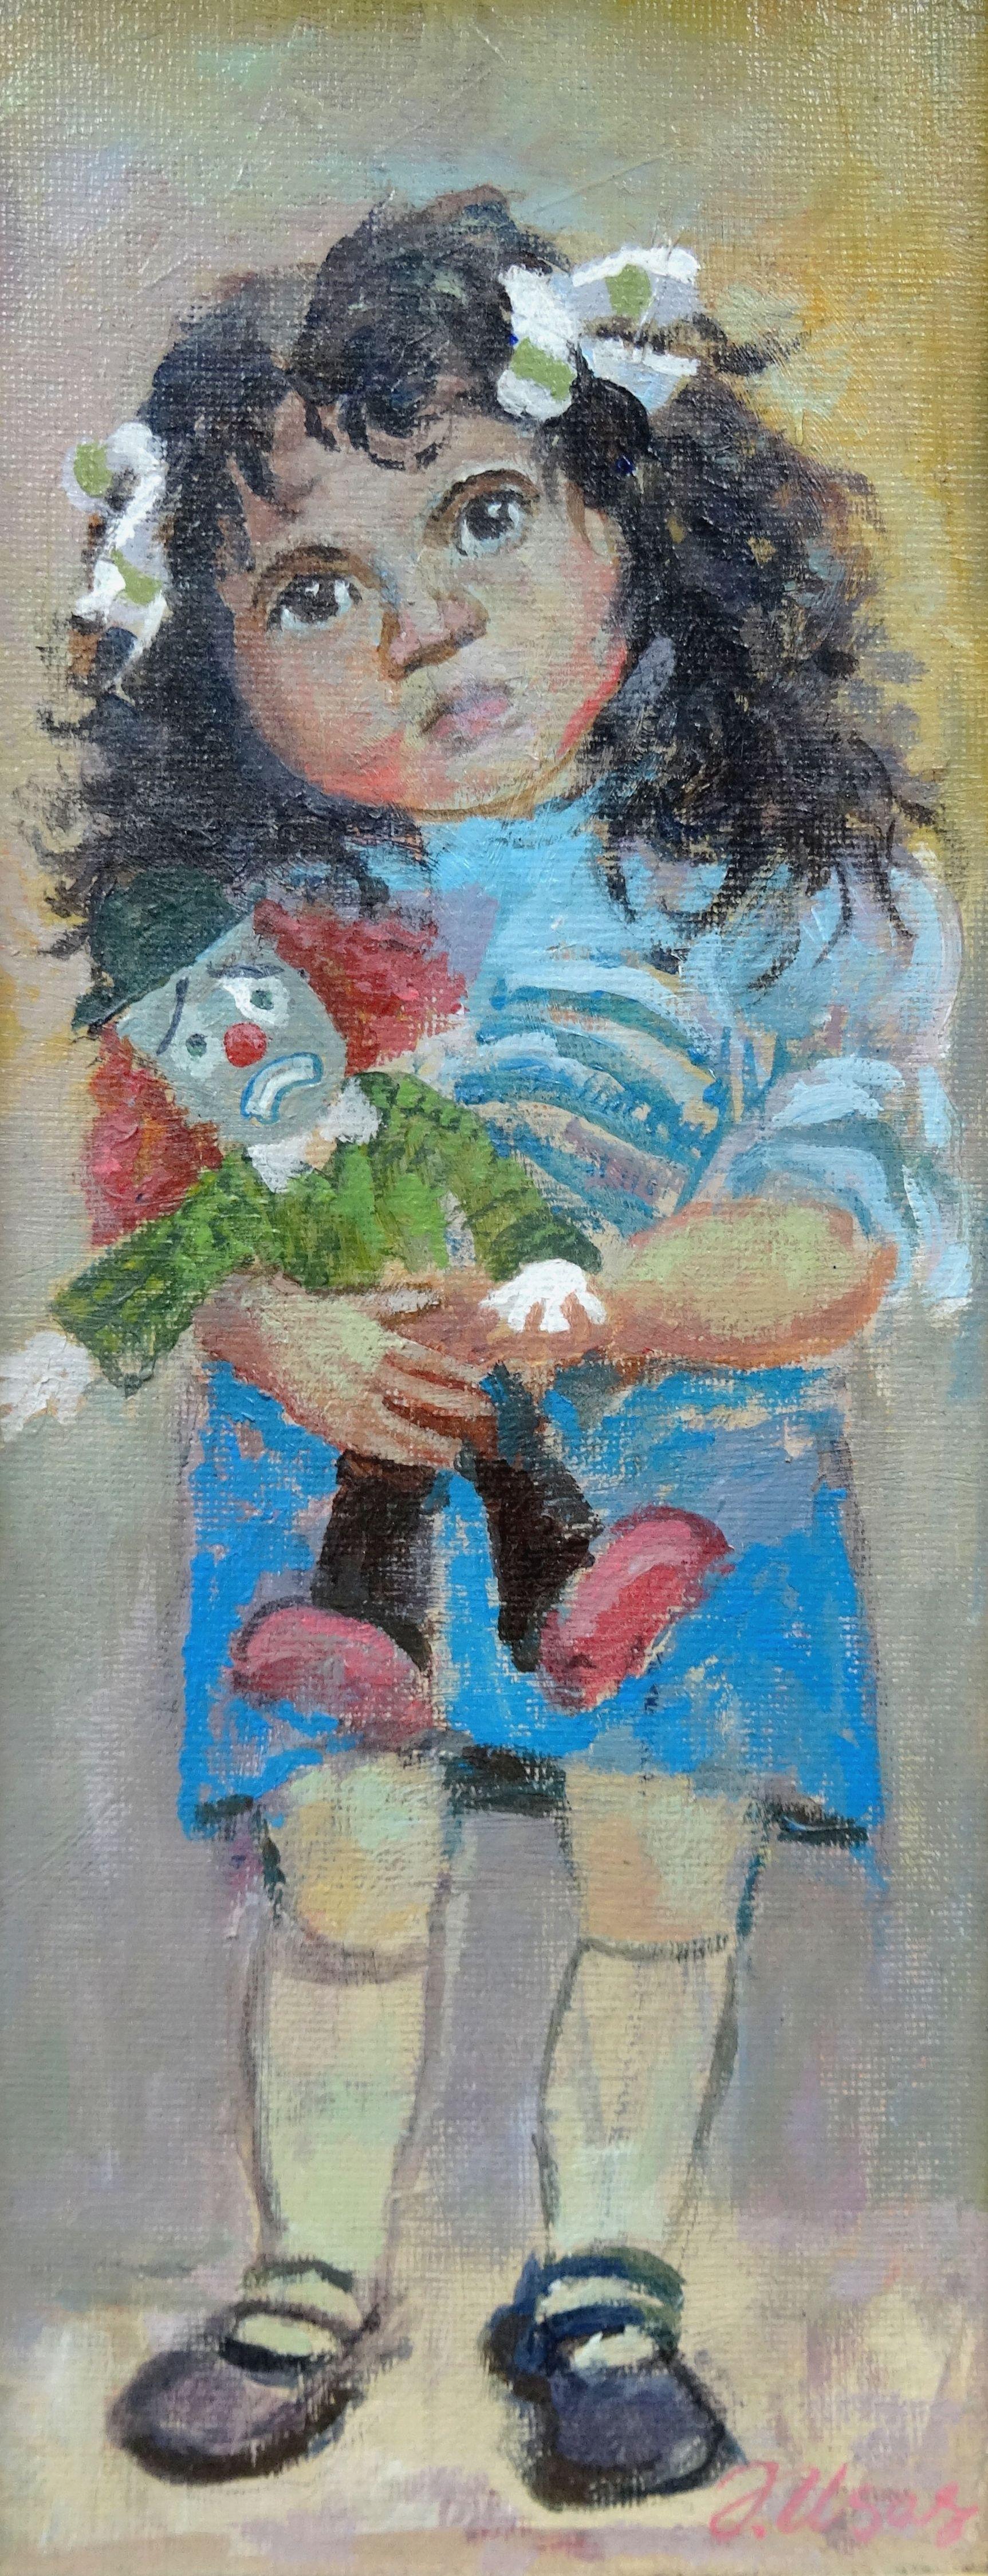 Clown. 2006, cardboard, acrylic, 32x14.5 cm